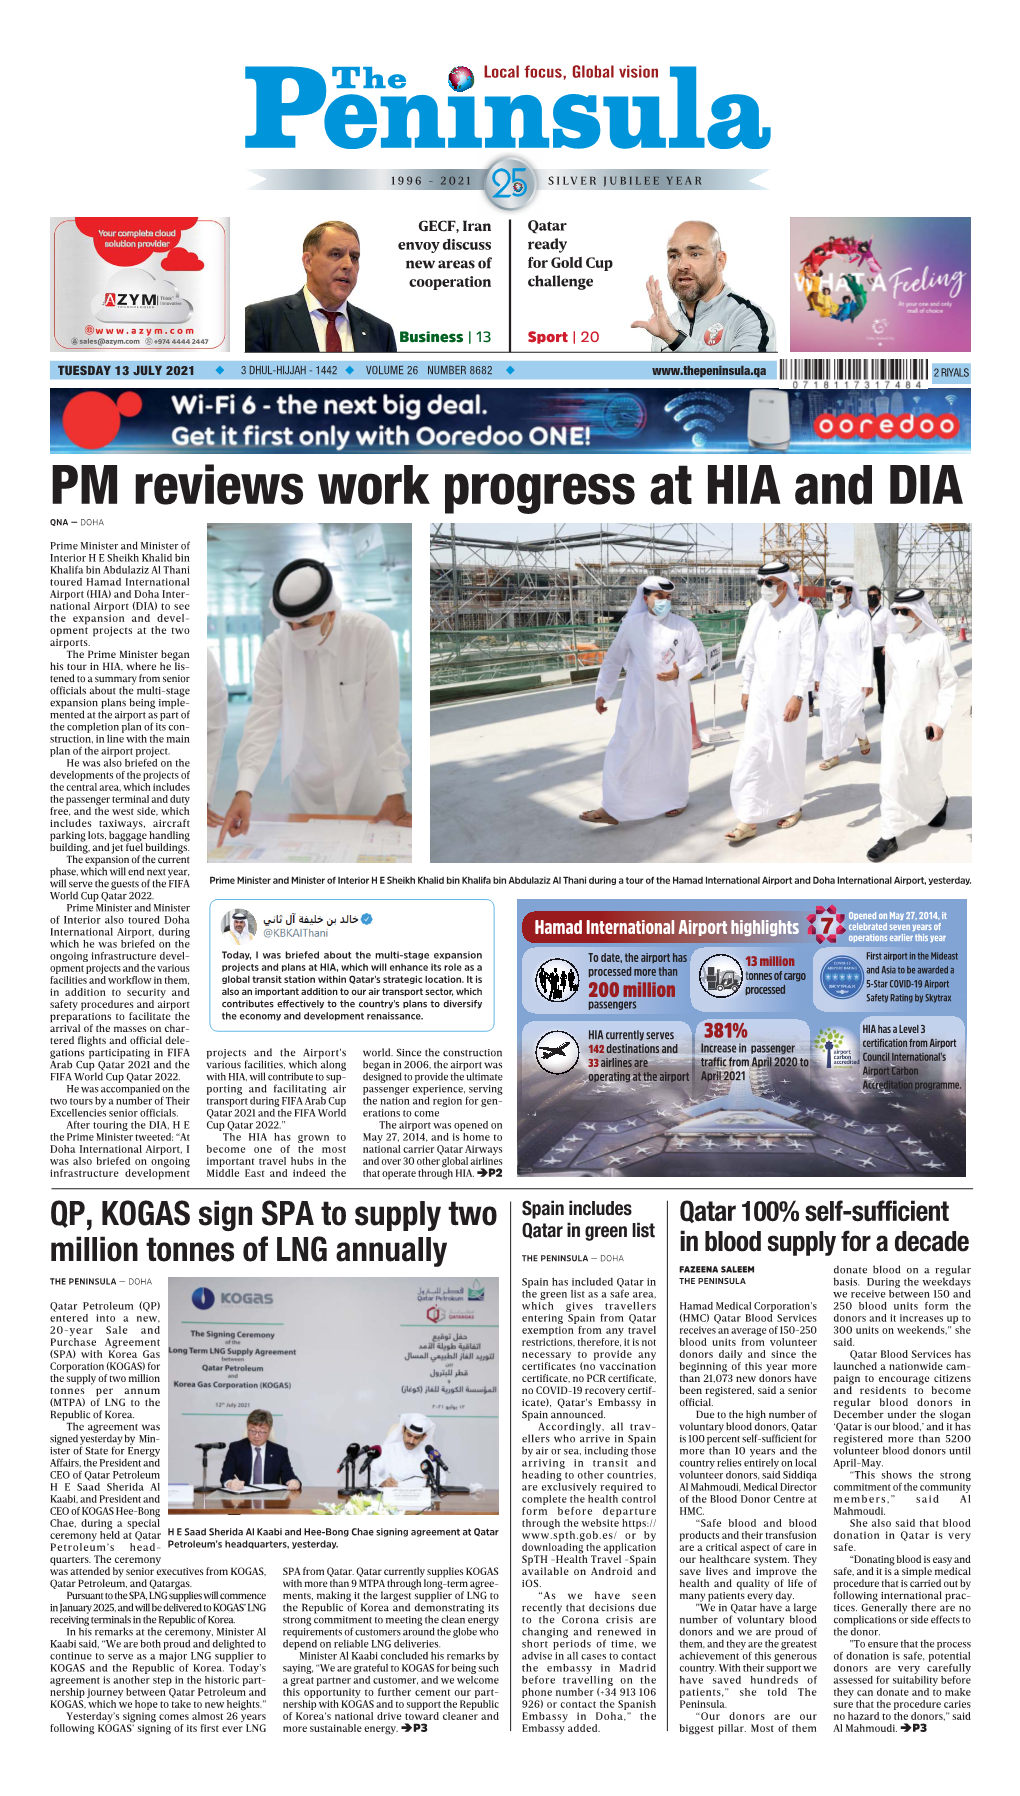 PM Reviews Work Progress at HIA and DIA QNA — DOHA